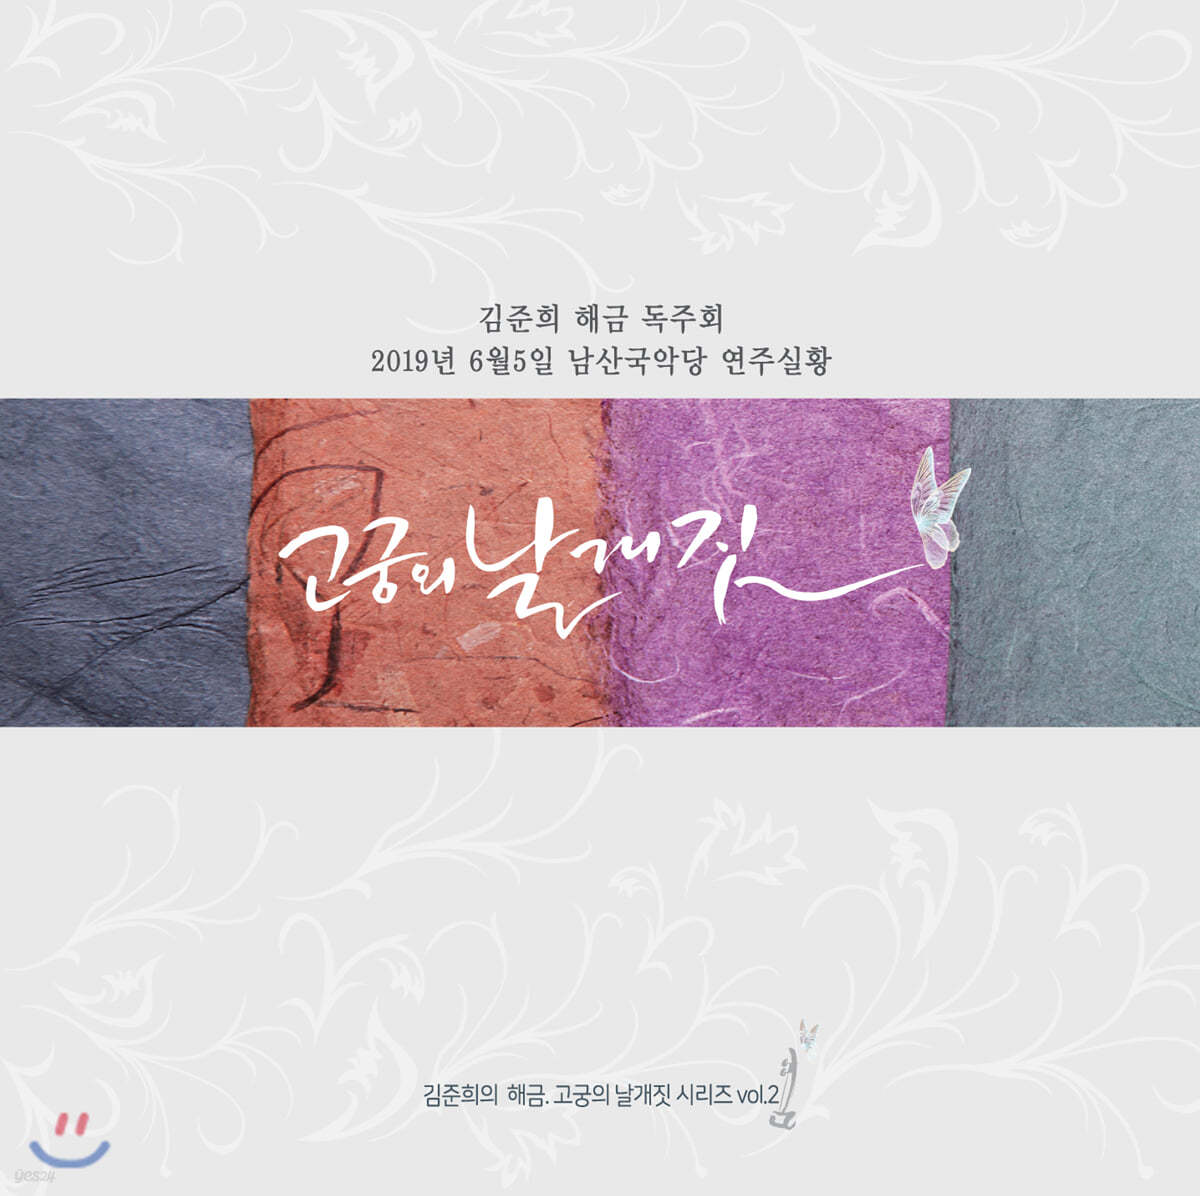 김준희 - 고궁의 날개짓 Vol.2 (남산국악당 해금 독주회 실황 앨범)